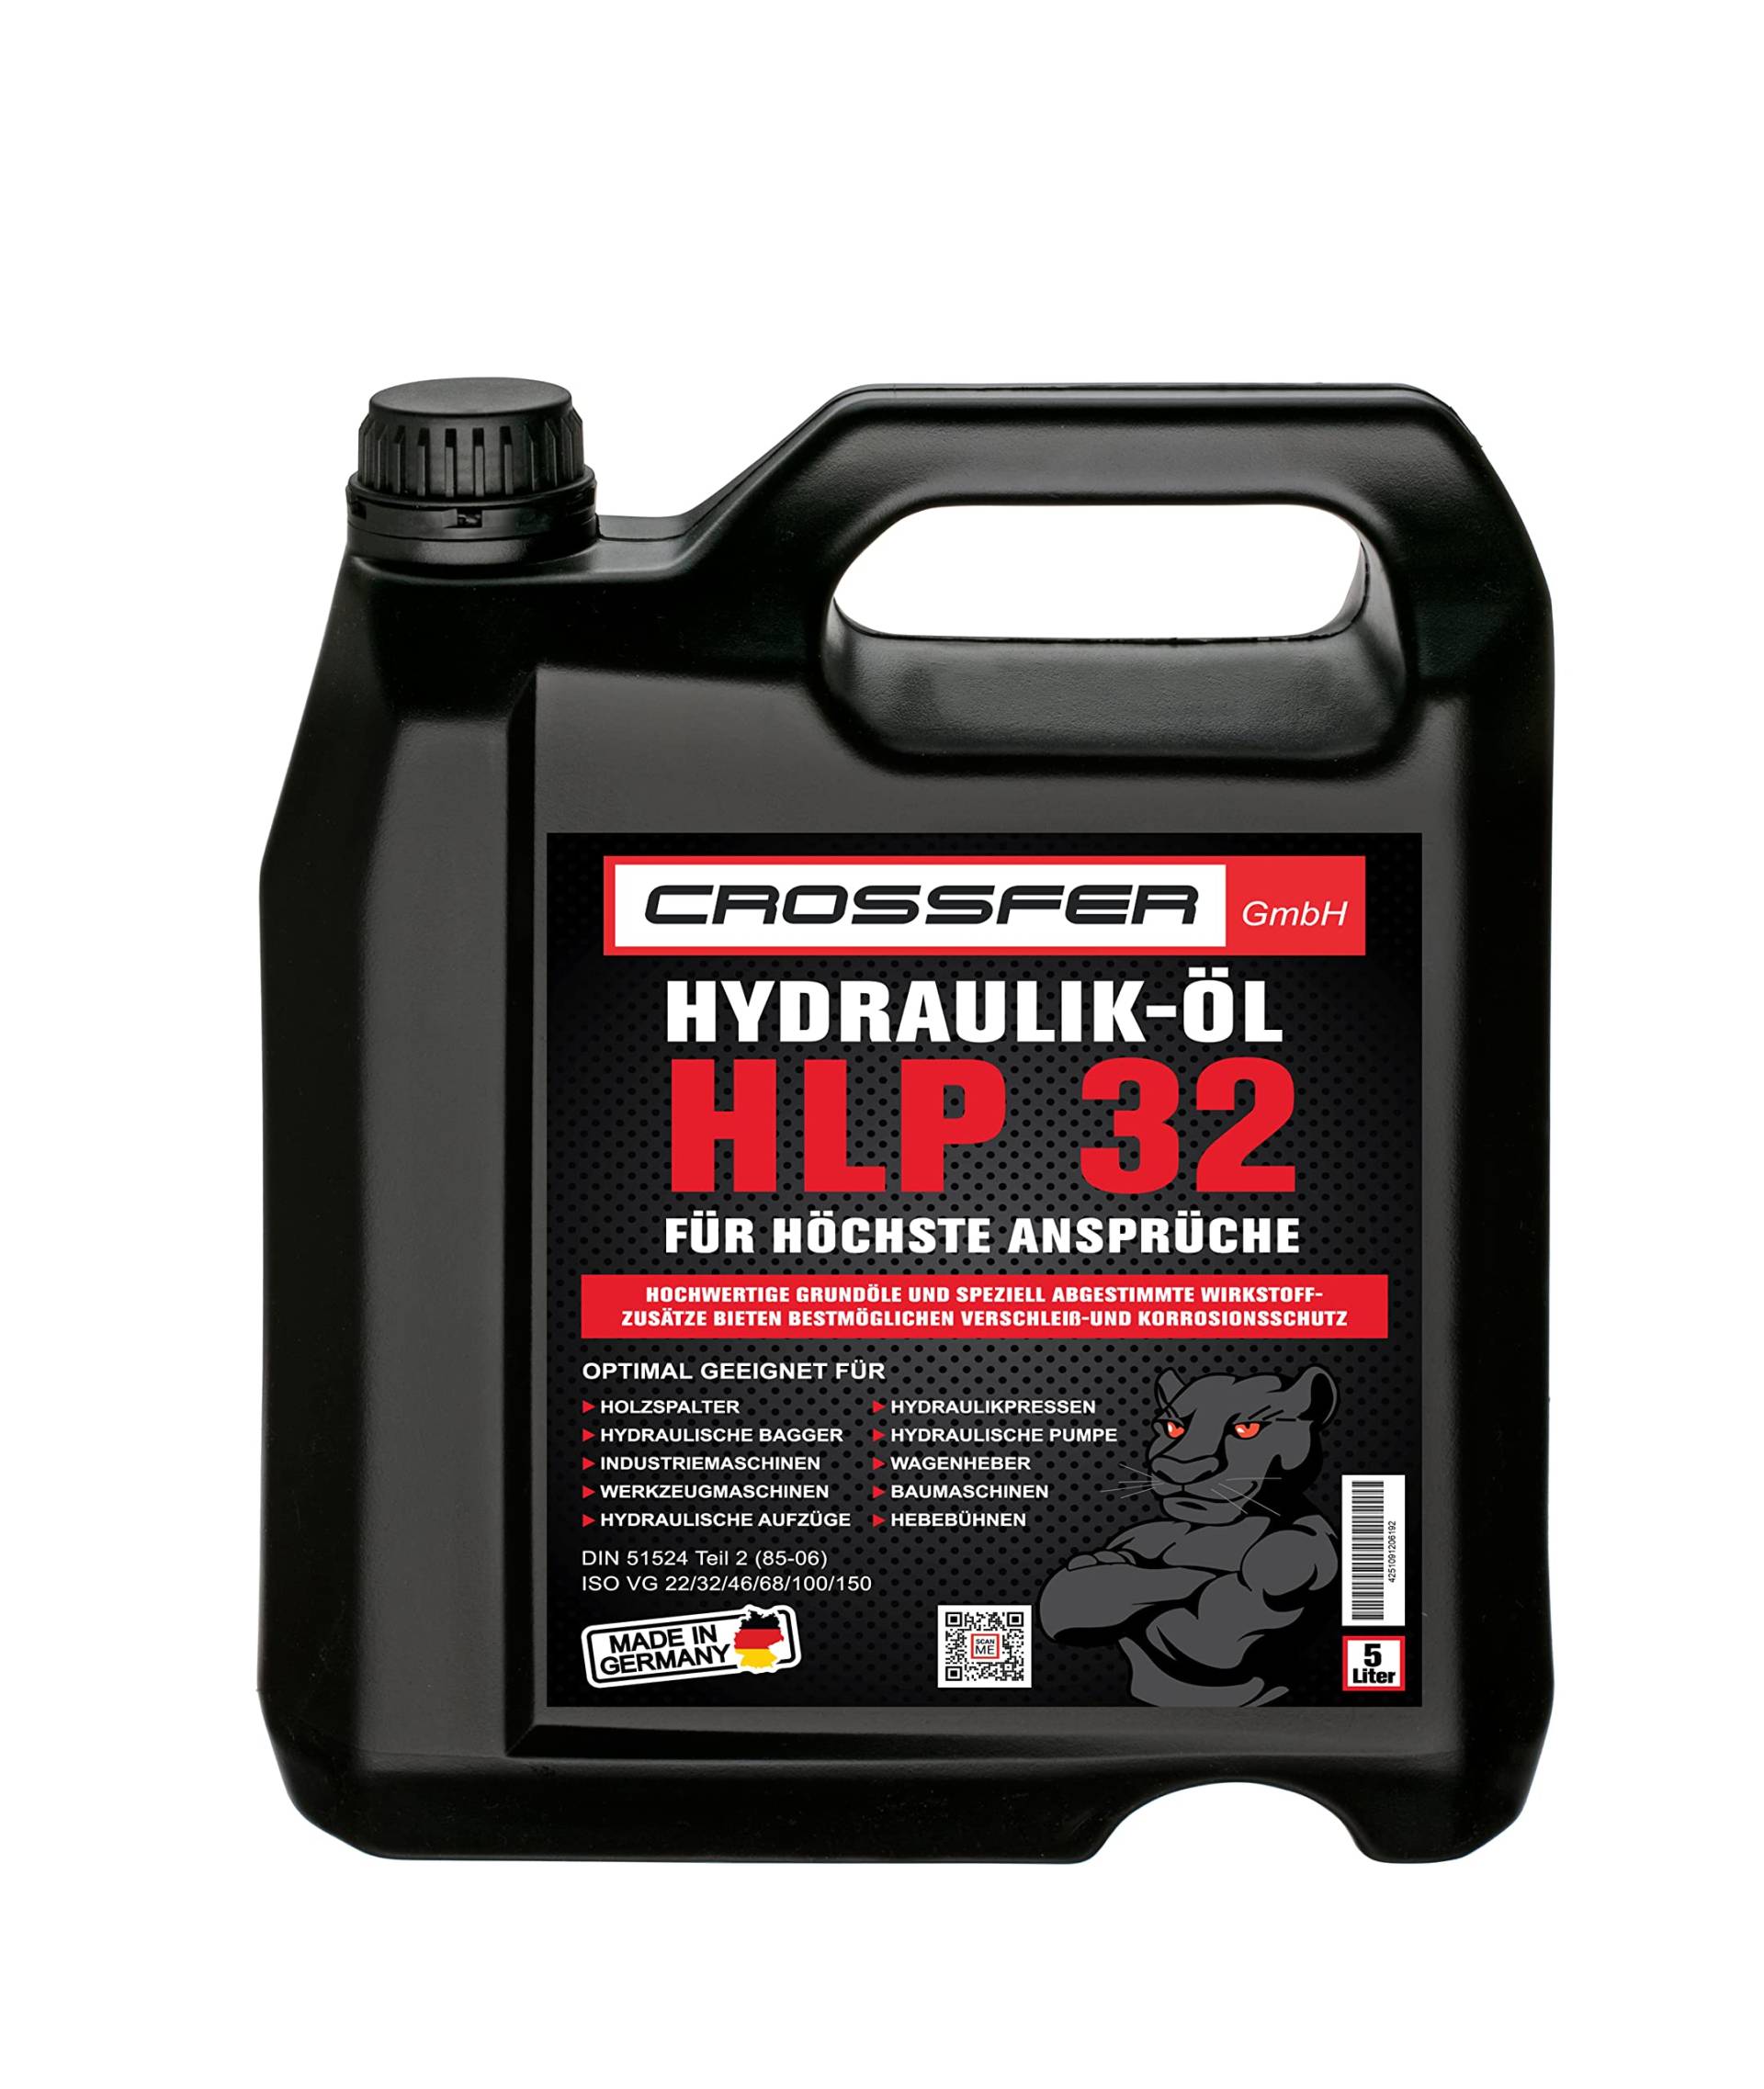 CROSSFER 5 Liter Kanister HLP32 Hydrauliköl für Hydraulikpressen, Holzspalter, Wagenheber, Hydraulikflüssigkeit mit 32er Viskosität von AUTDER